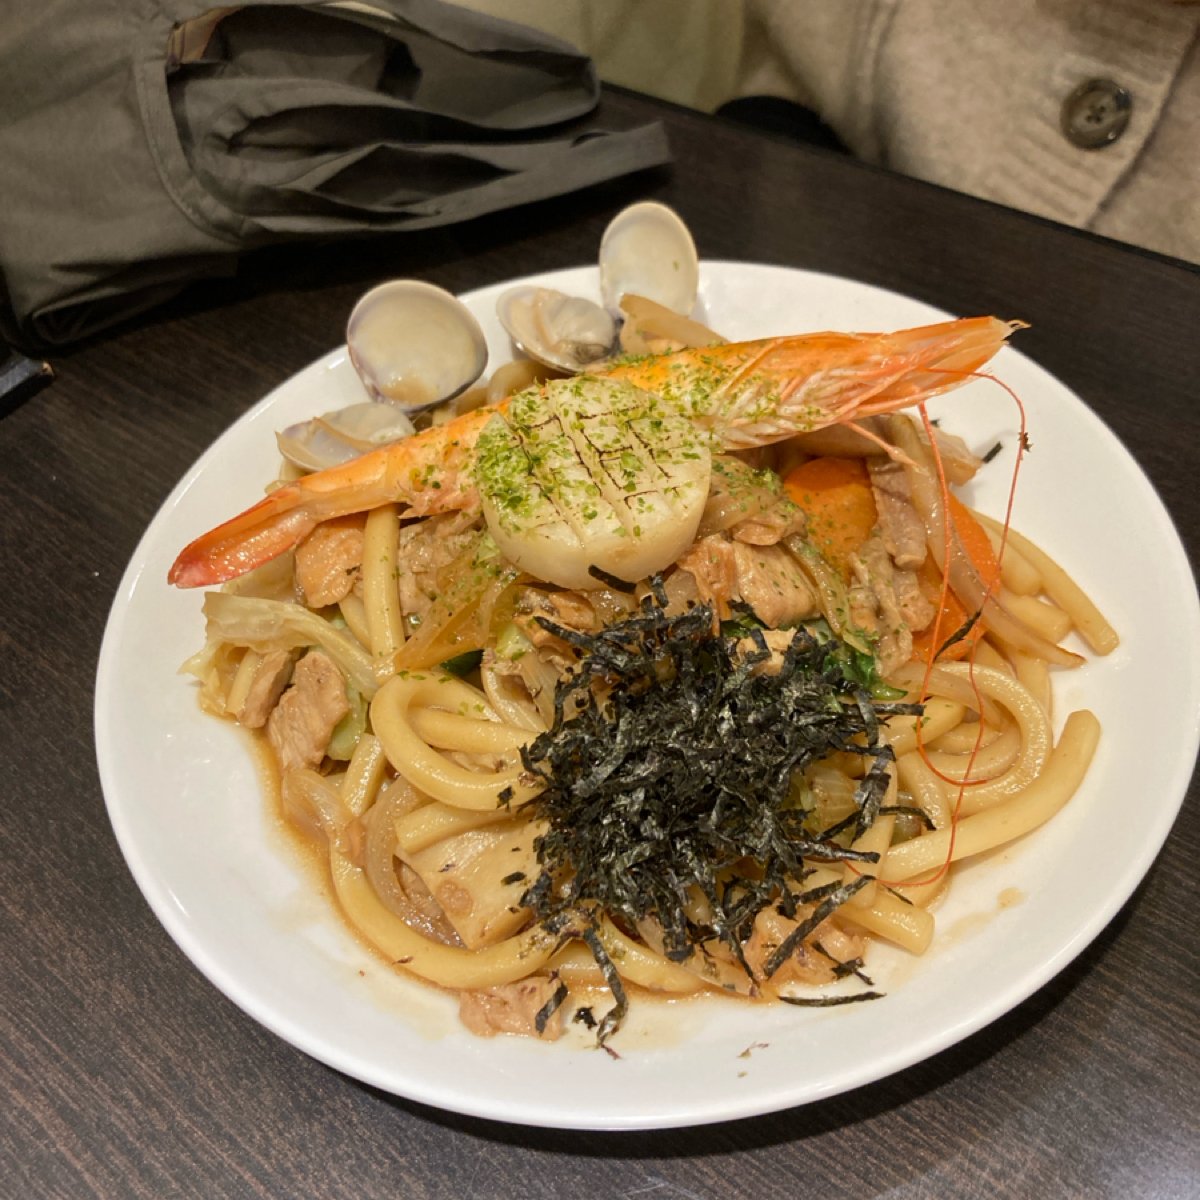 史波蓋提left a review | 江戶櫻日本料理| Fooday app • Every review matters